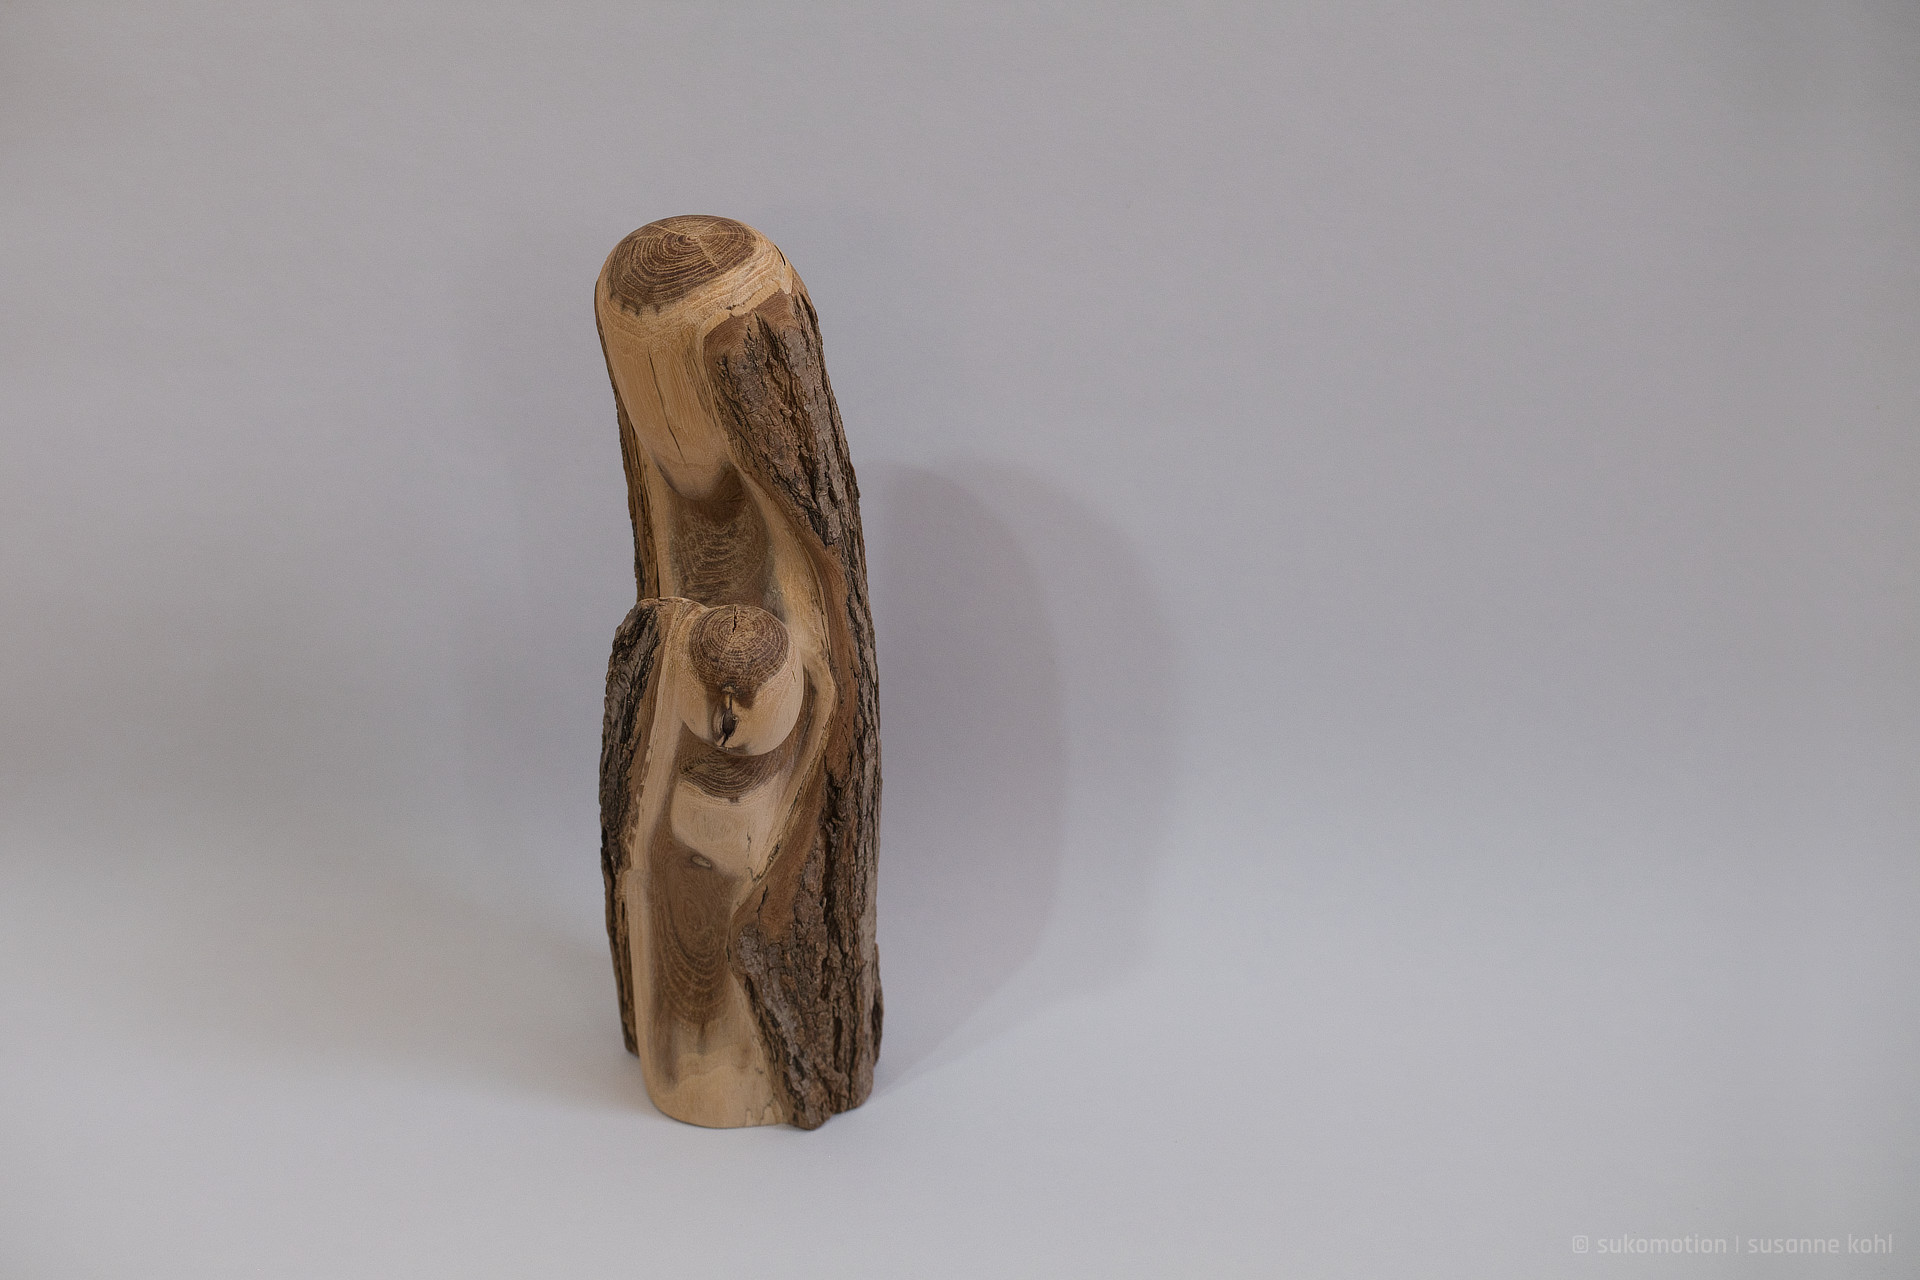 sicher & neugierig - skulptur aus akazienholz von sukomotion | susanne kohl - berlin